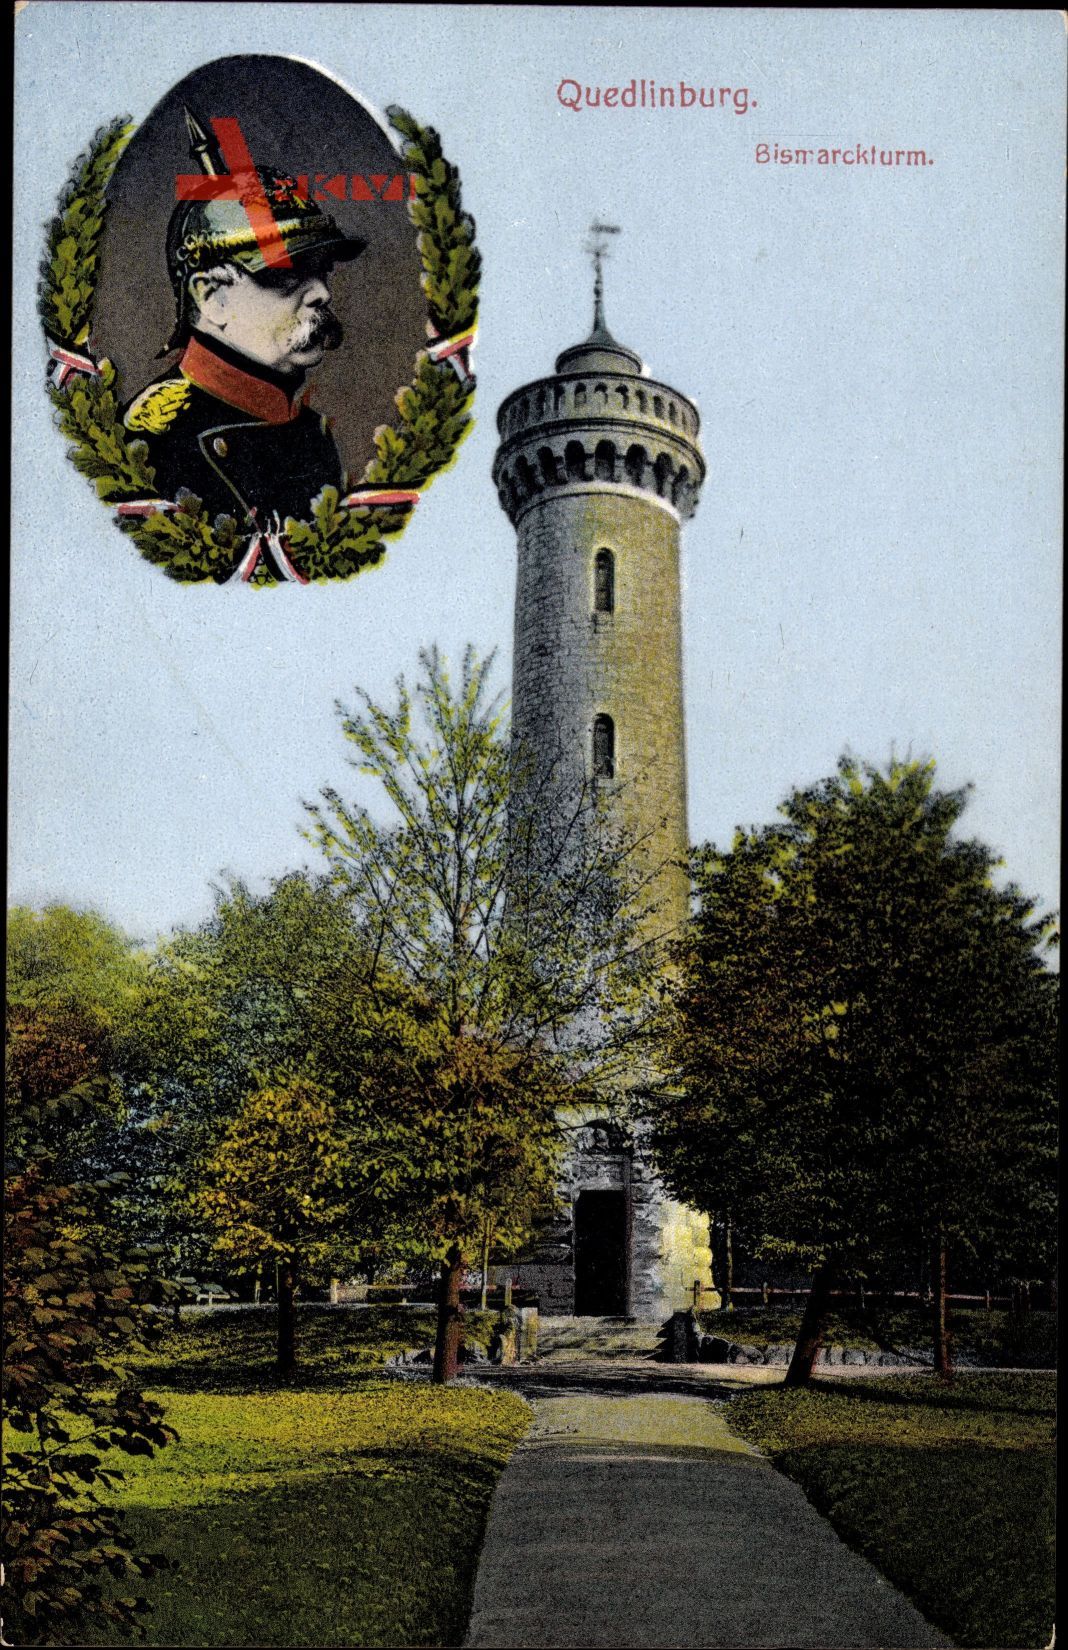 Quedlinburg im Harz, Der Bismarckturm mit Bismarck Portrait